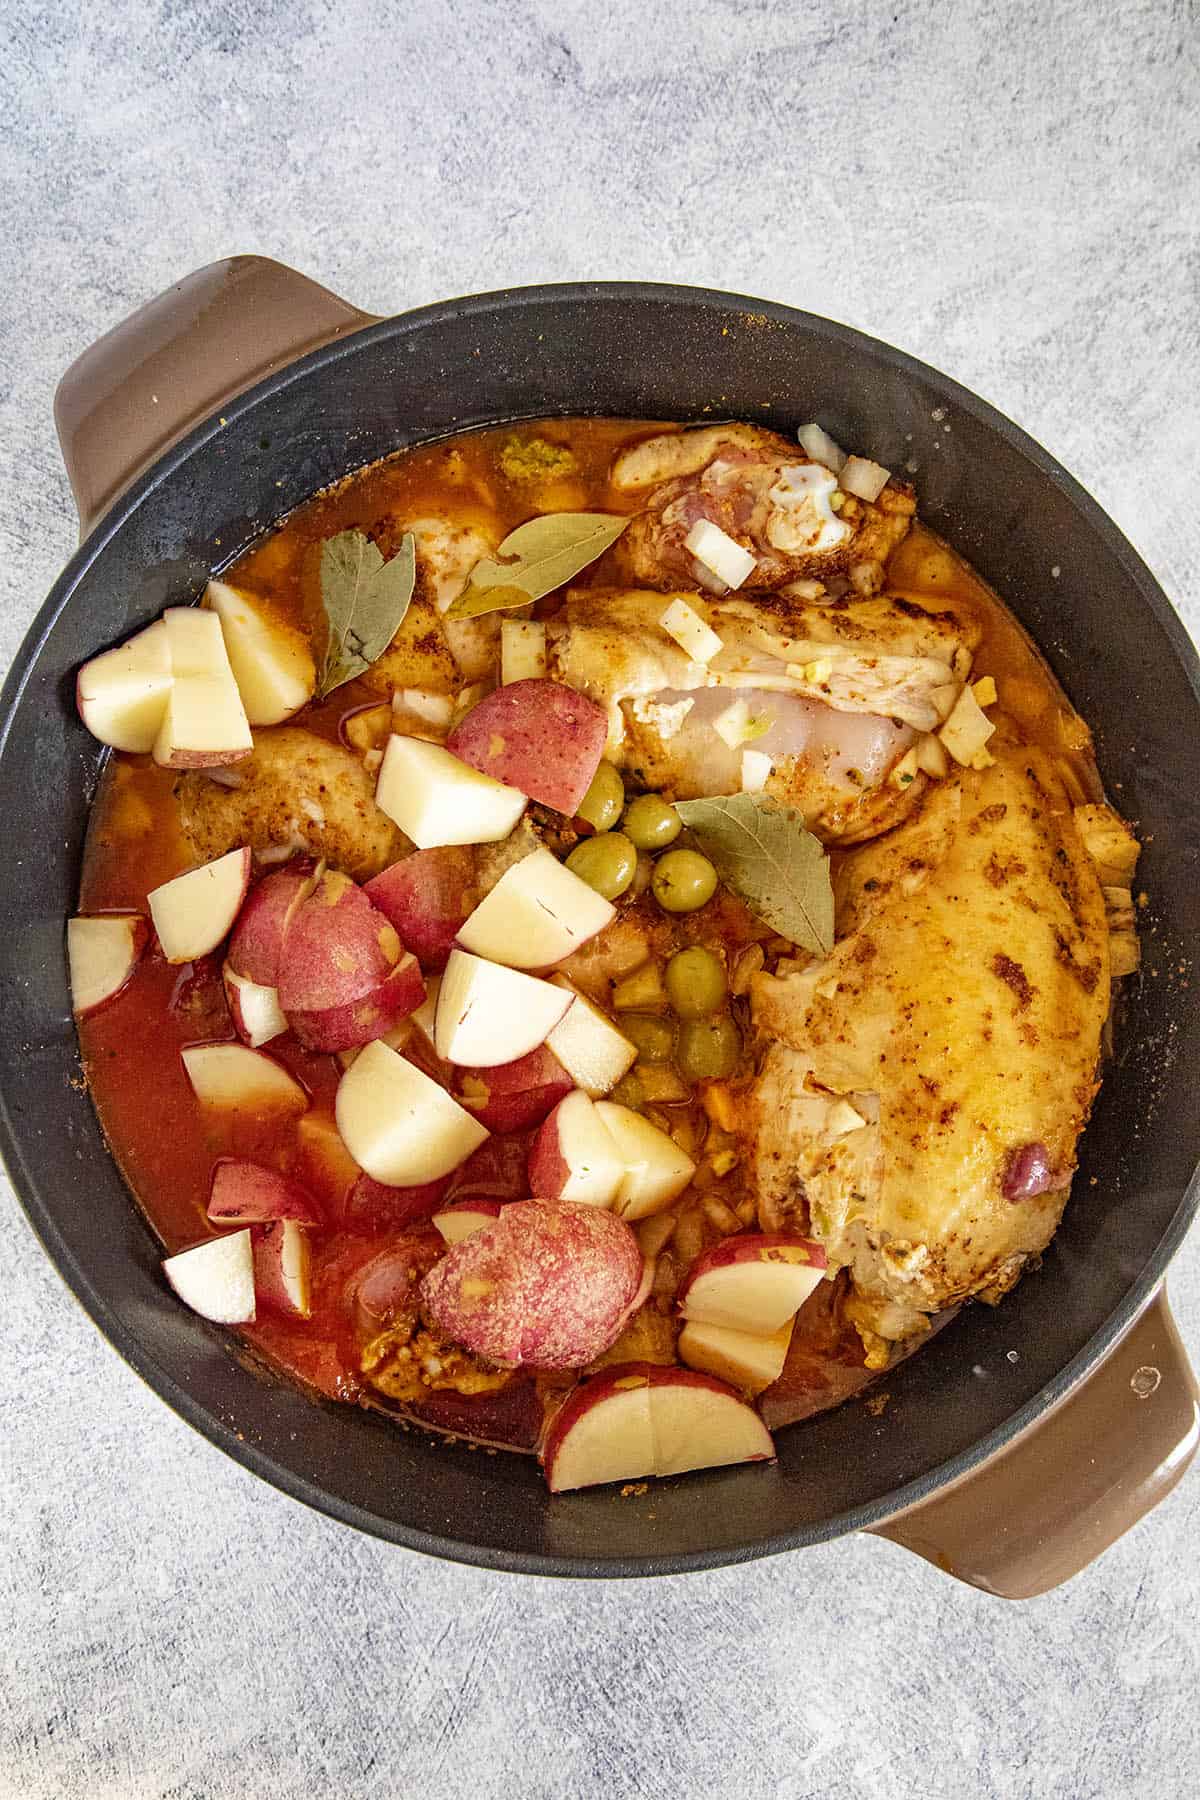 Simmering the pollo guisado in a pot